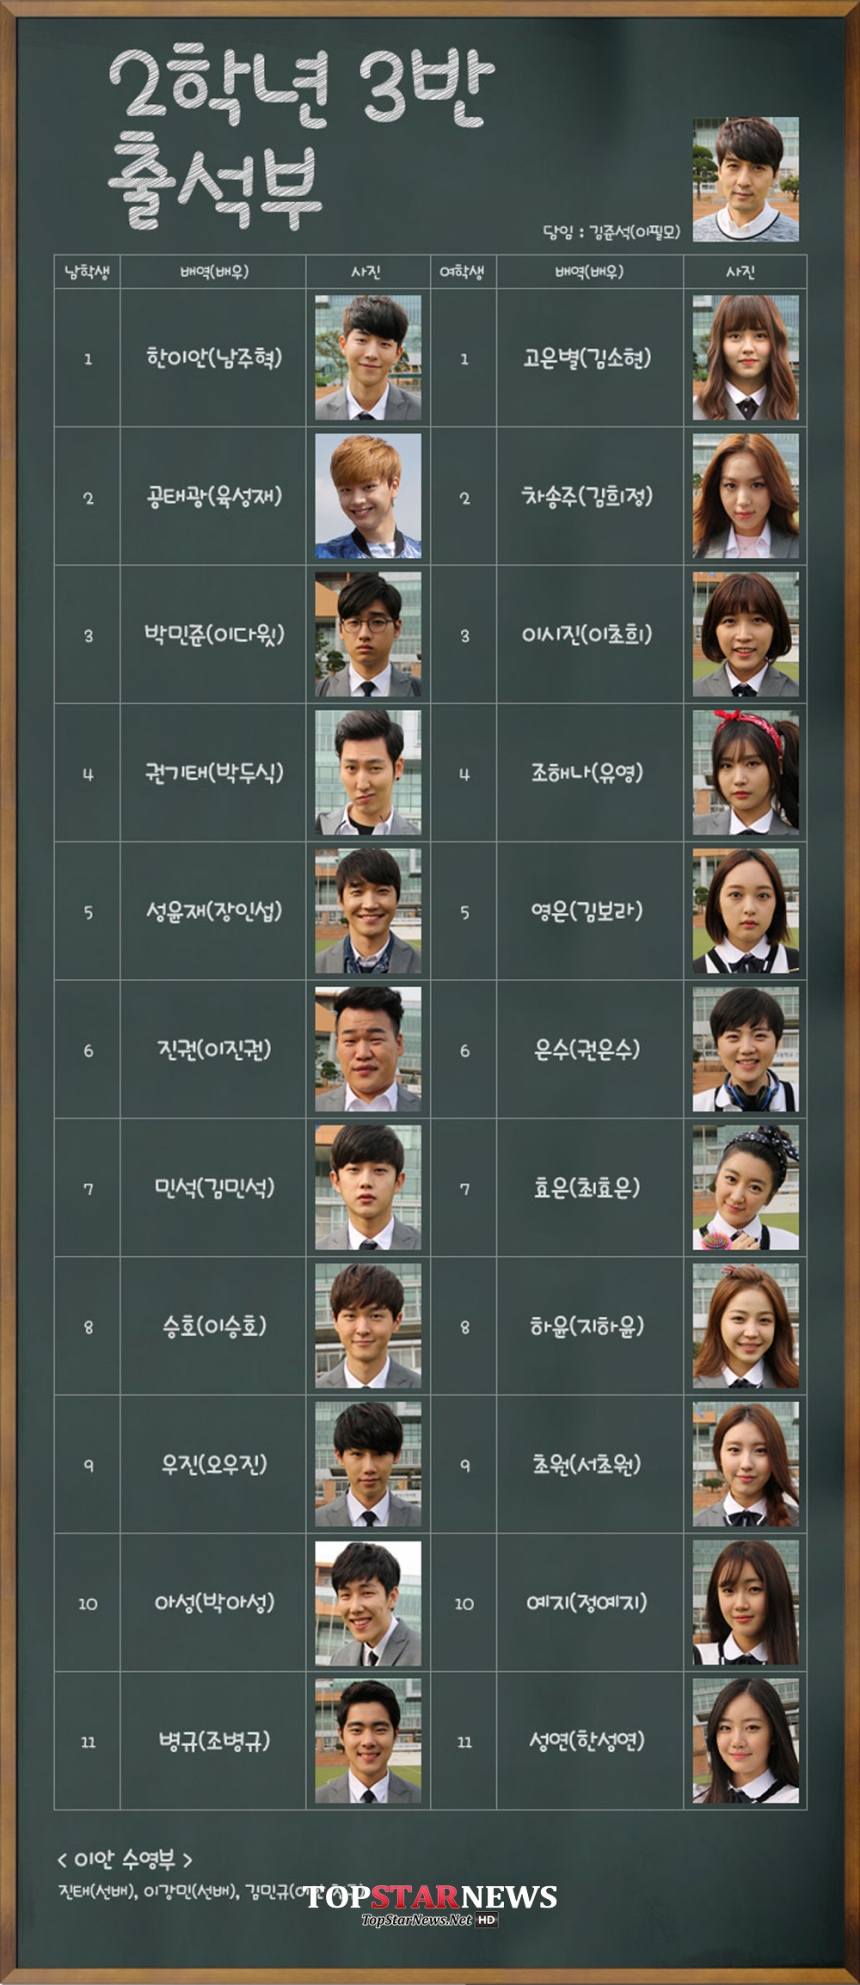 ‘후아유-학교2015’ 출연진 / KBS ‘후아유-학교2015’ 홈페이지